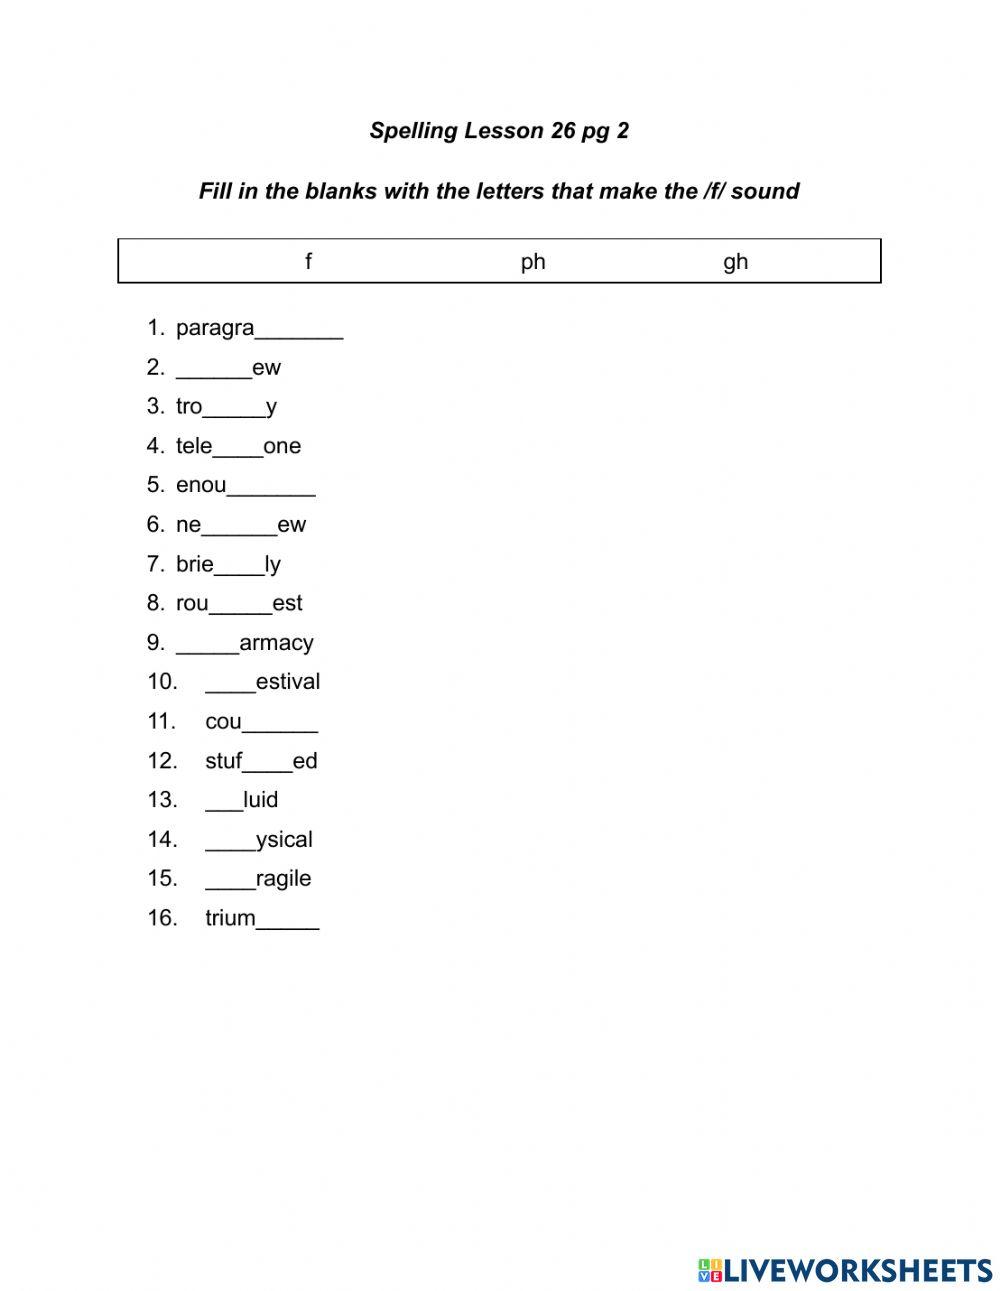 Spelling lesson 26 pg 2